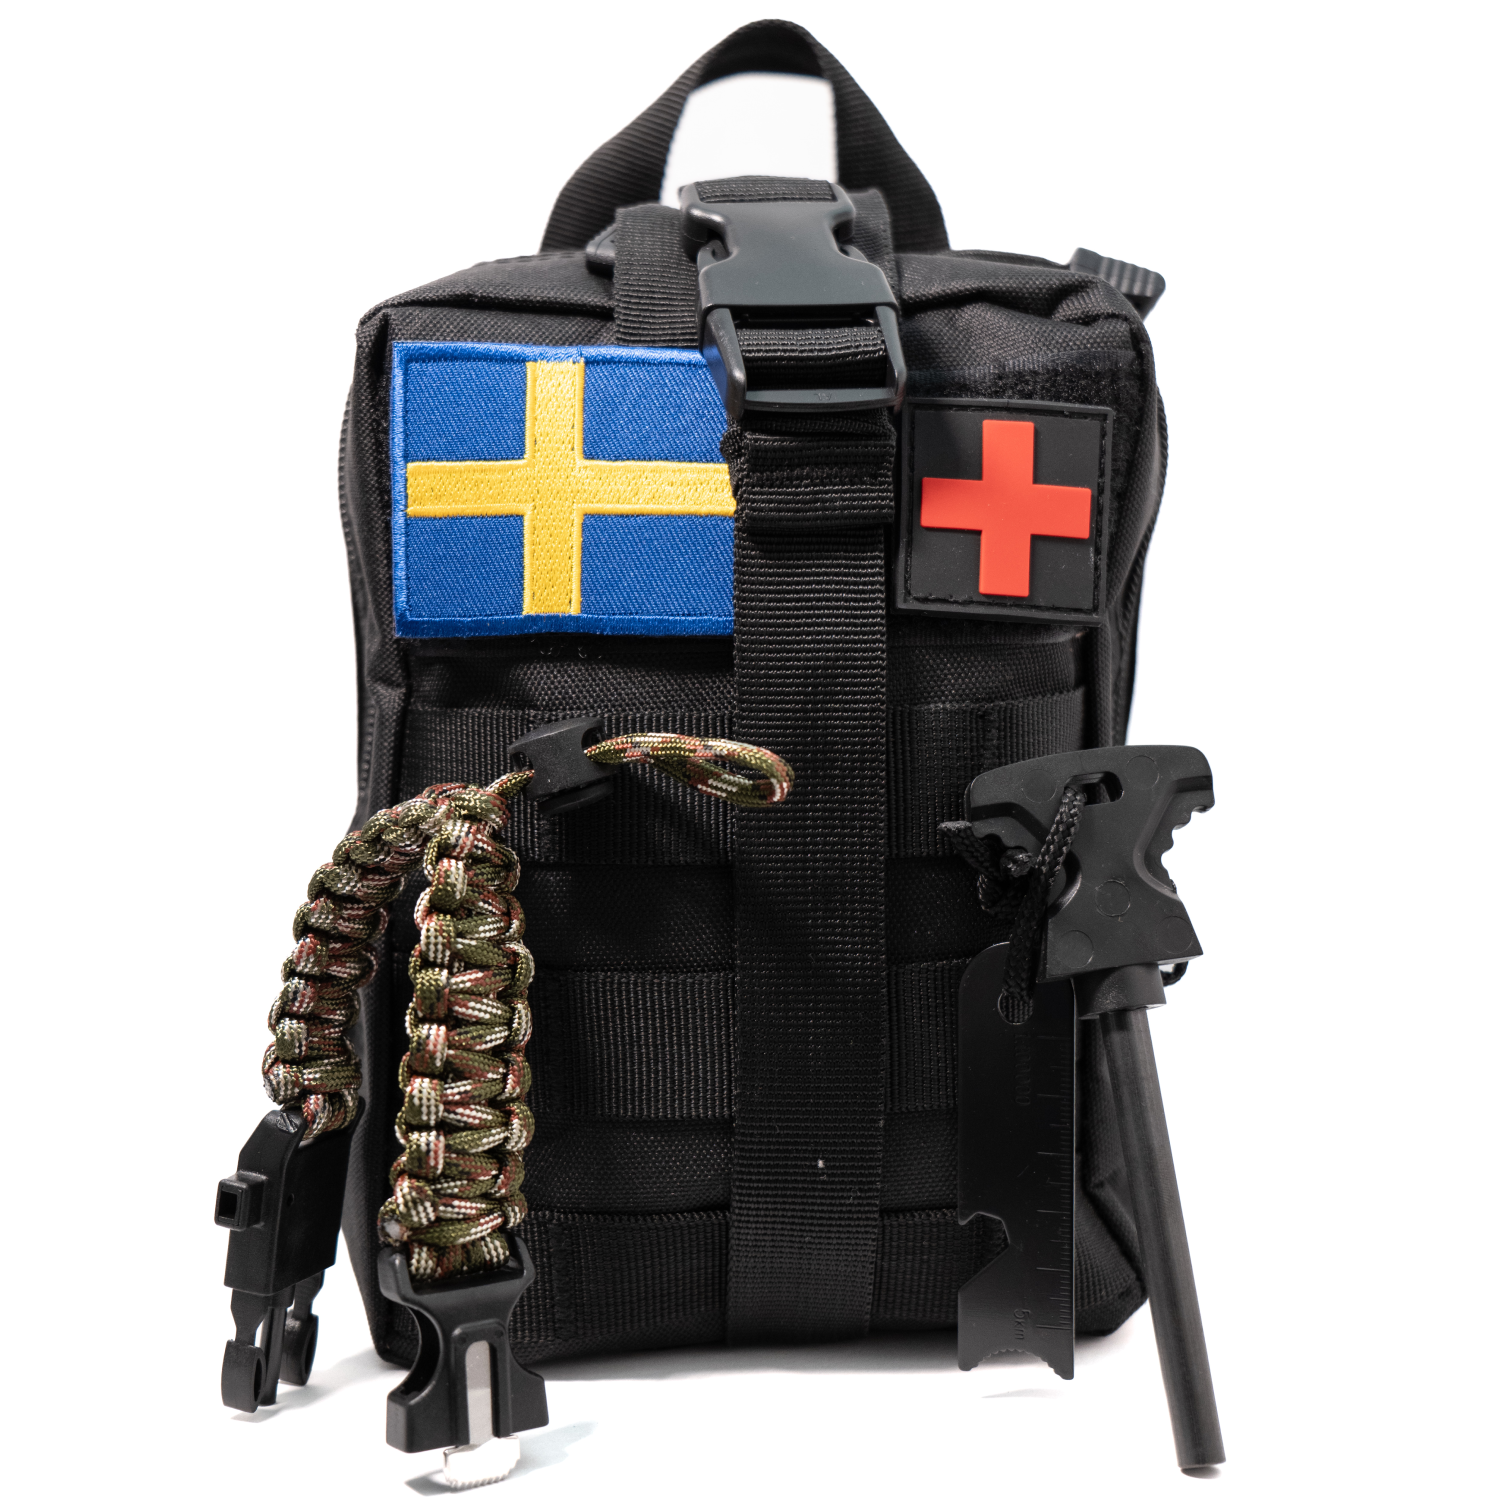 EMT Molle tactical bag